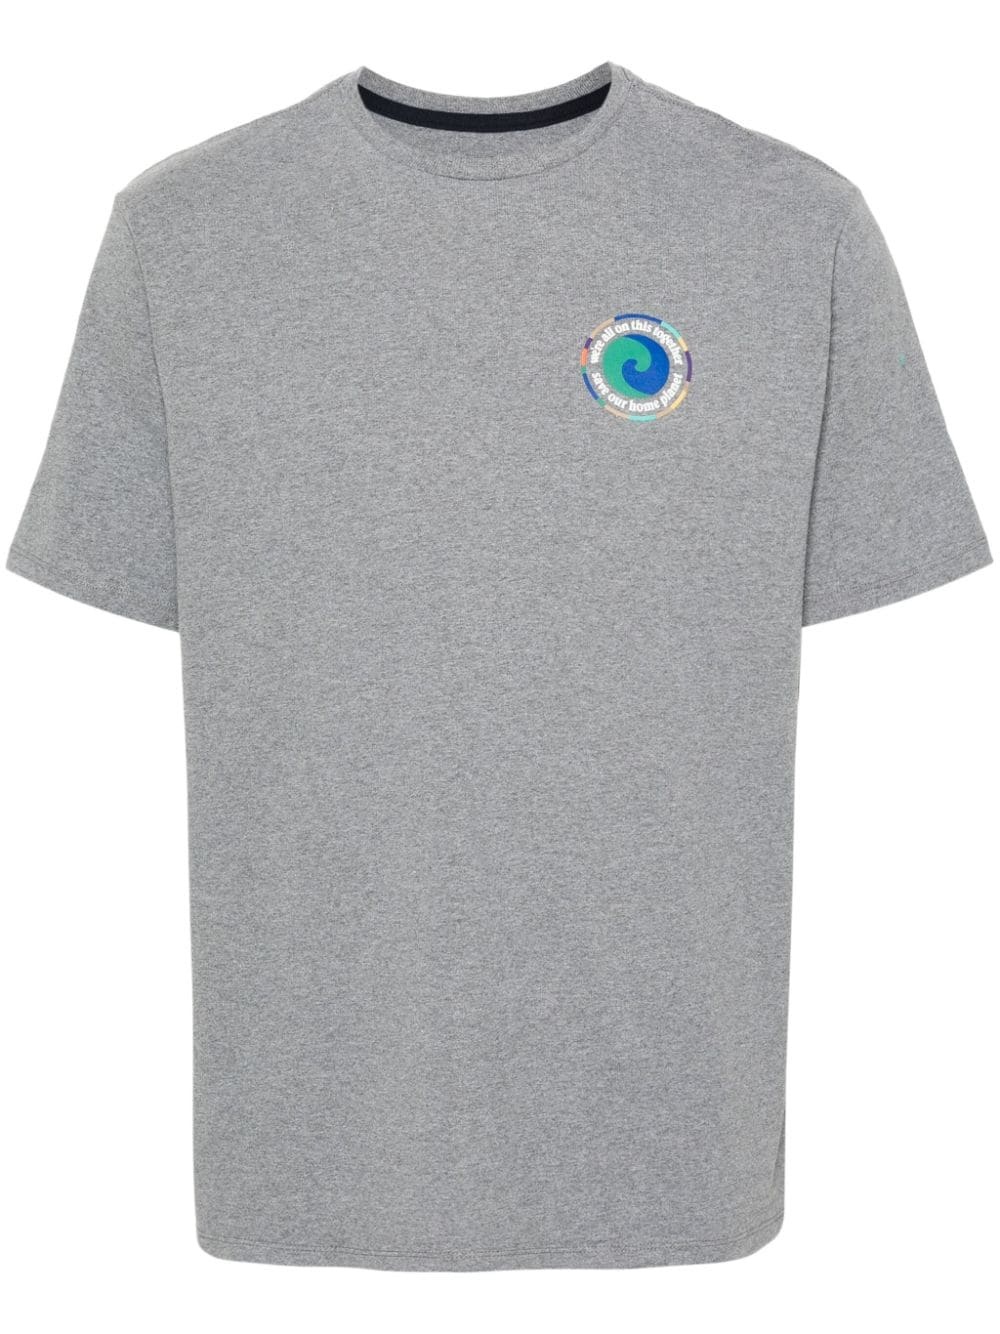 M's Unity Fitz cotton T-shirt - 1